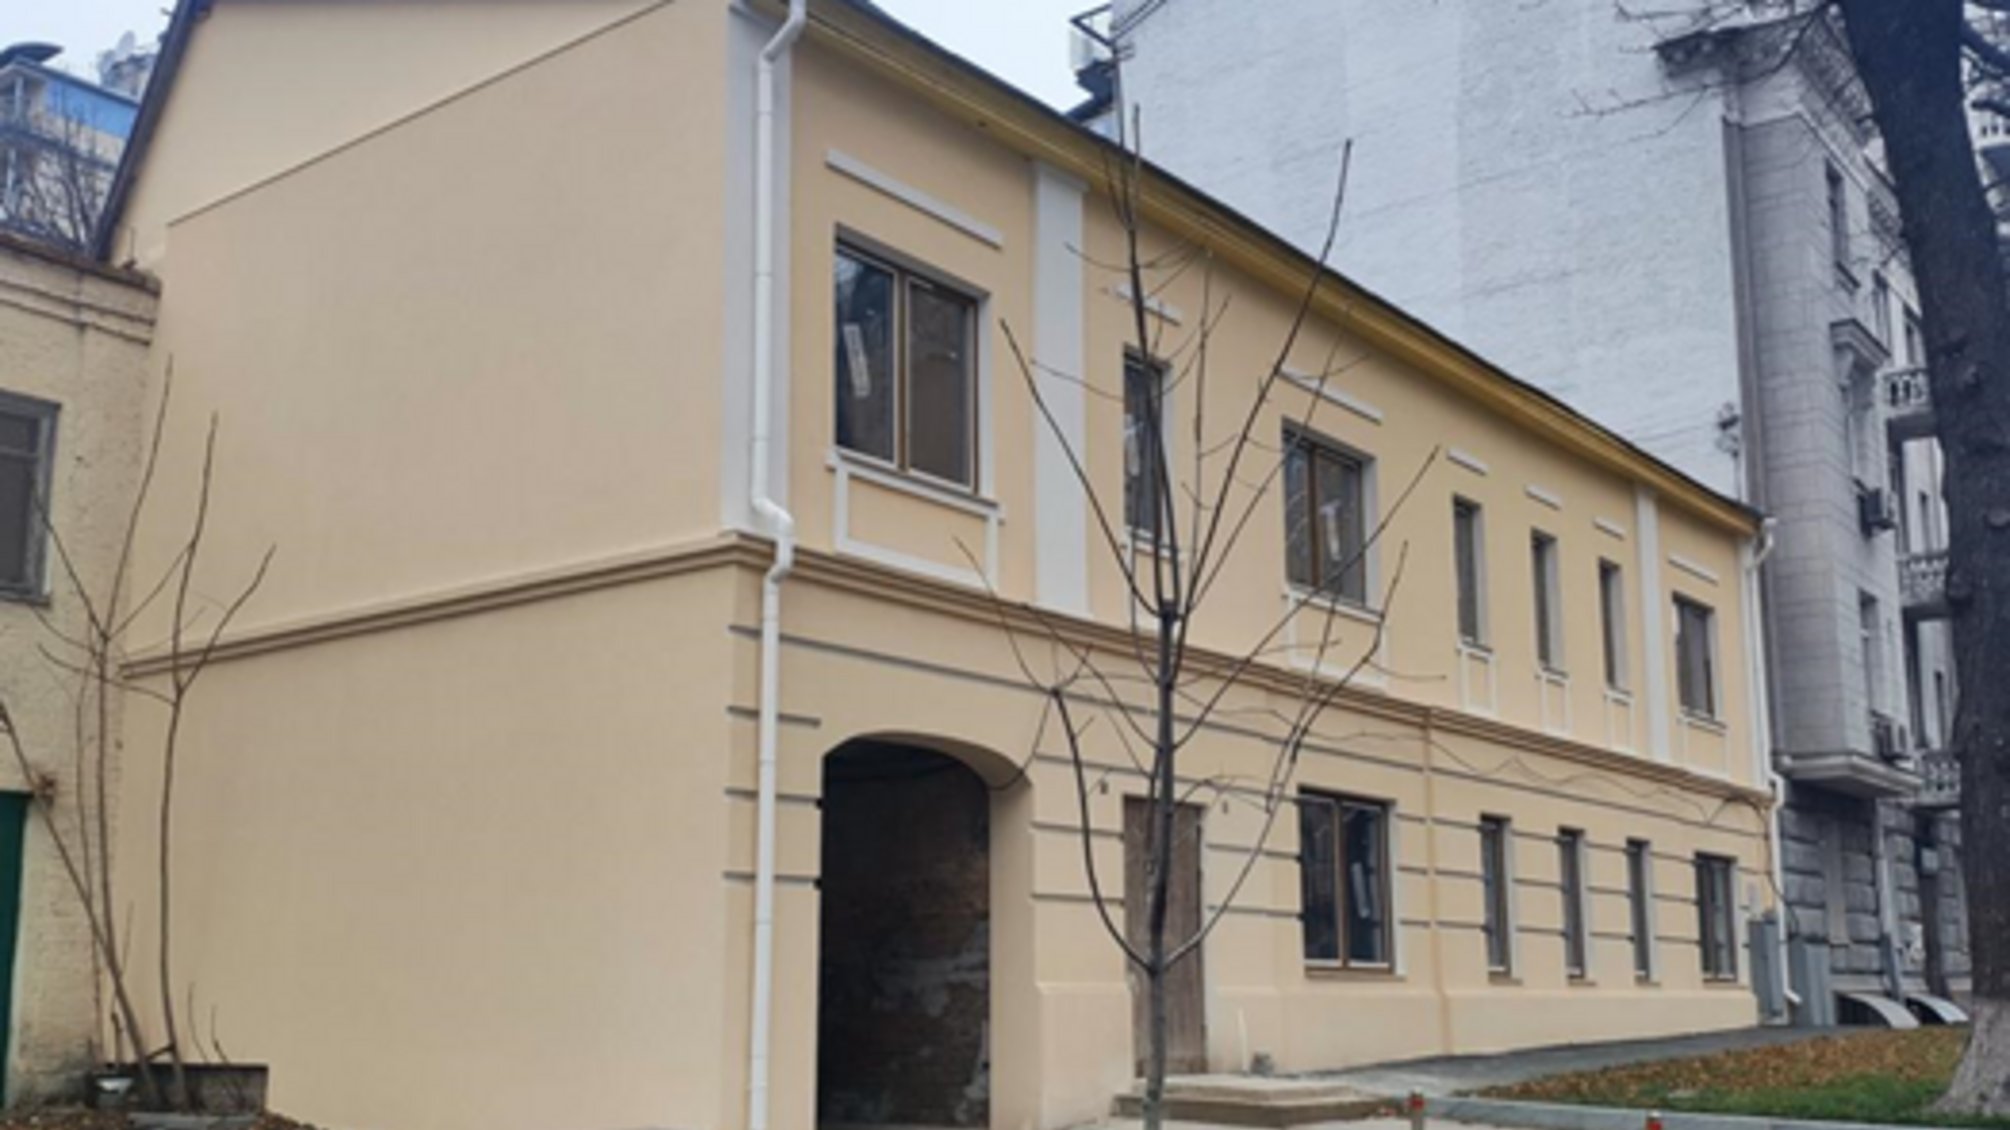 Ремонт 120-летнего дома Замковая в Киеве осуществляется в соответствии с законом - экспертиза